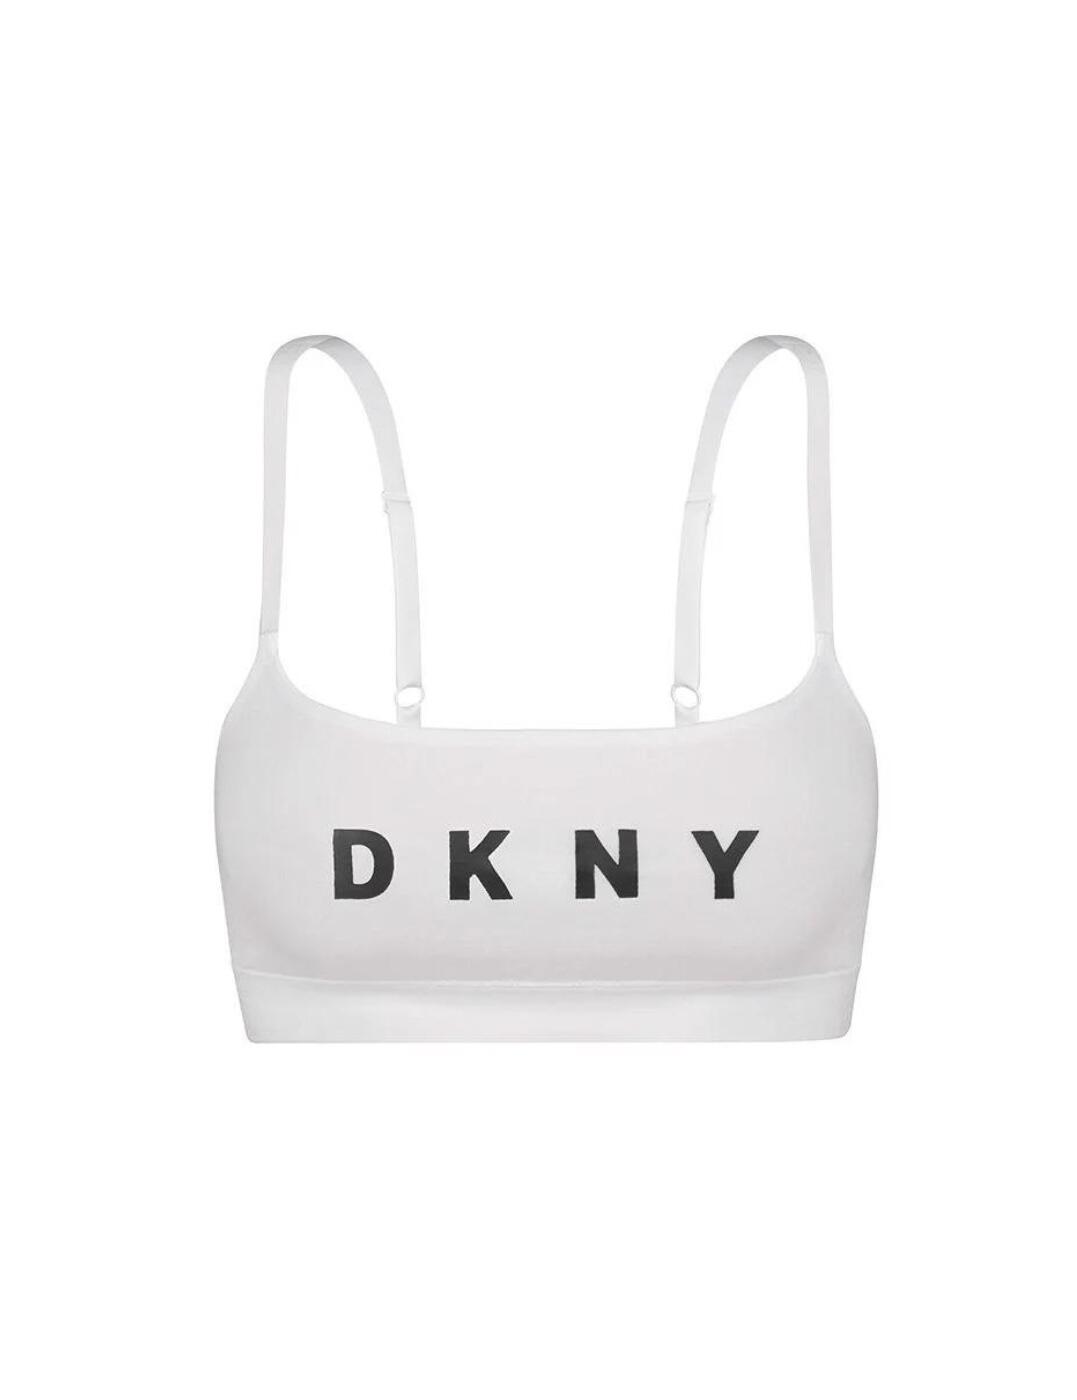 Dkny Intimates Seamless Litewear Scoop Bralette Dk7476 - Big Apple